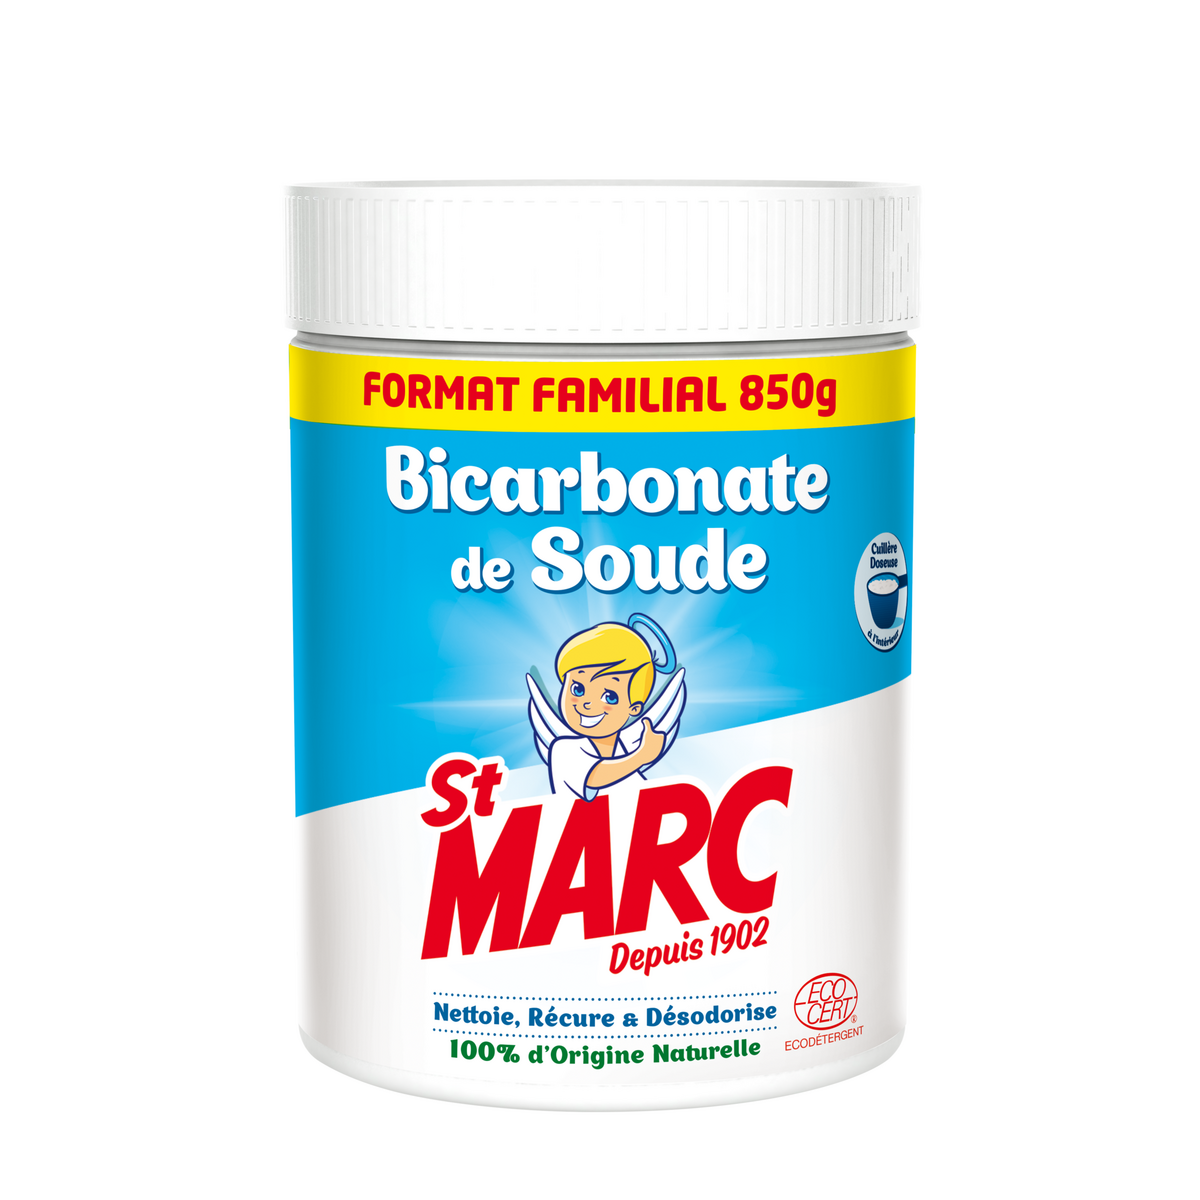 ST MARC Bicarbonate de soude 850g